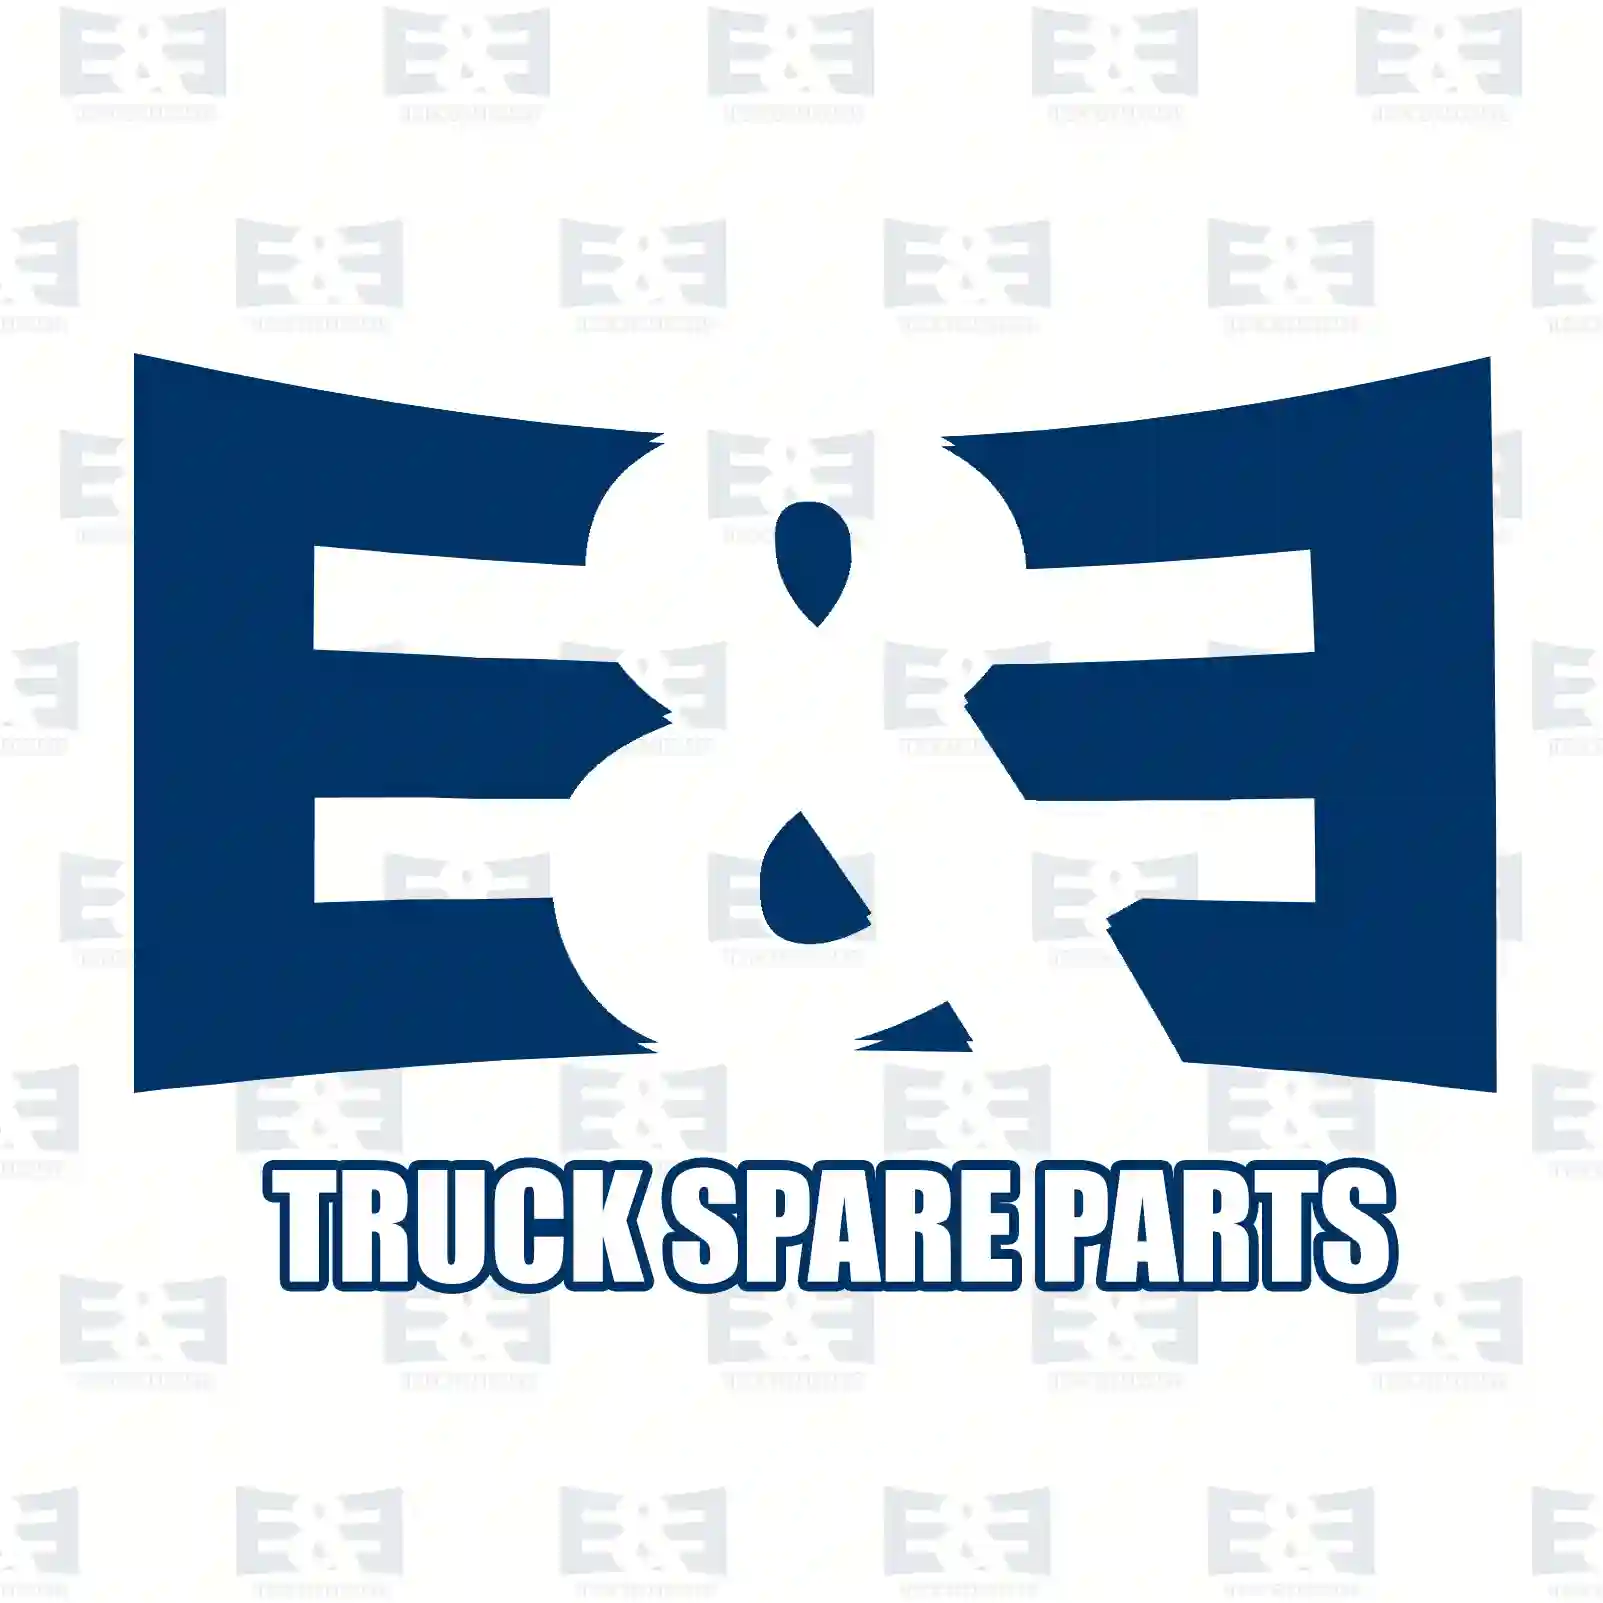 Bushing, compressor, 2E2296725, 51541007005S1, 51541007071S1, 51541017240S1 ||  2E2296725 E&E Truck Spare Parts | Truck Spare Parts, Auotomotive Spare Parts Bushing, compressor, 2E2296725, 51541007005S1, 51541007071S1, 51541017240S1 ||  2E2296725 E&E Truck Spare Parts | Truck Spare Parts, Auotomotive Spare Parts